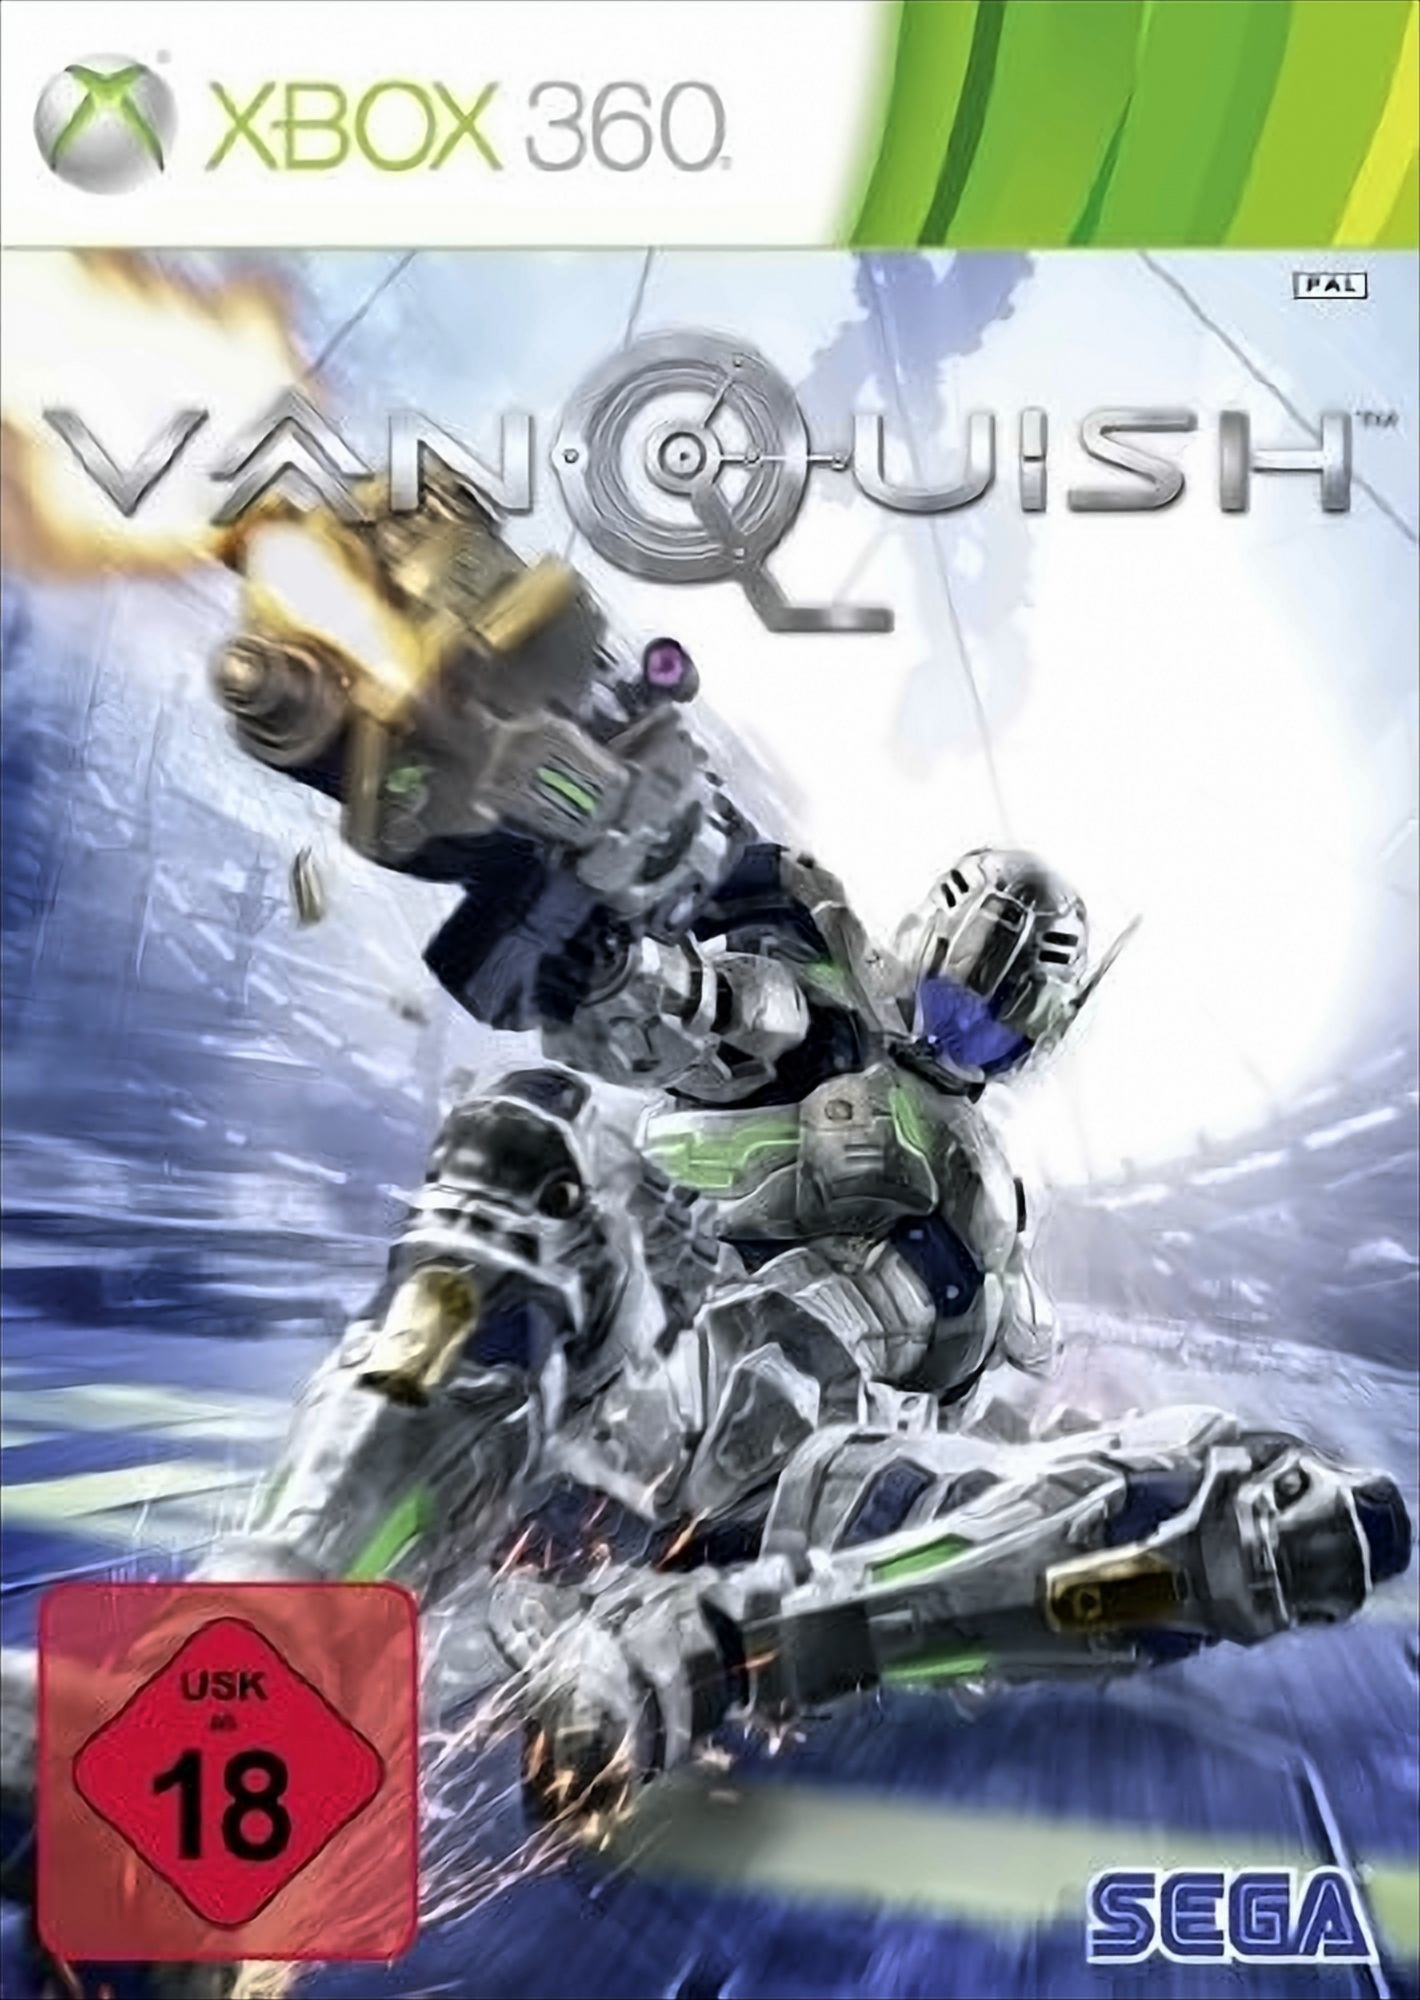 Vanquish - 360] [Xbox